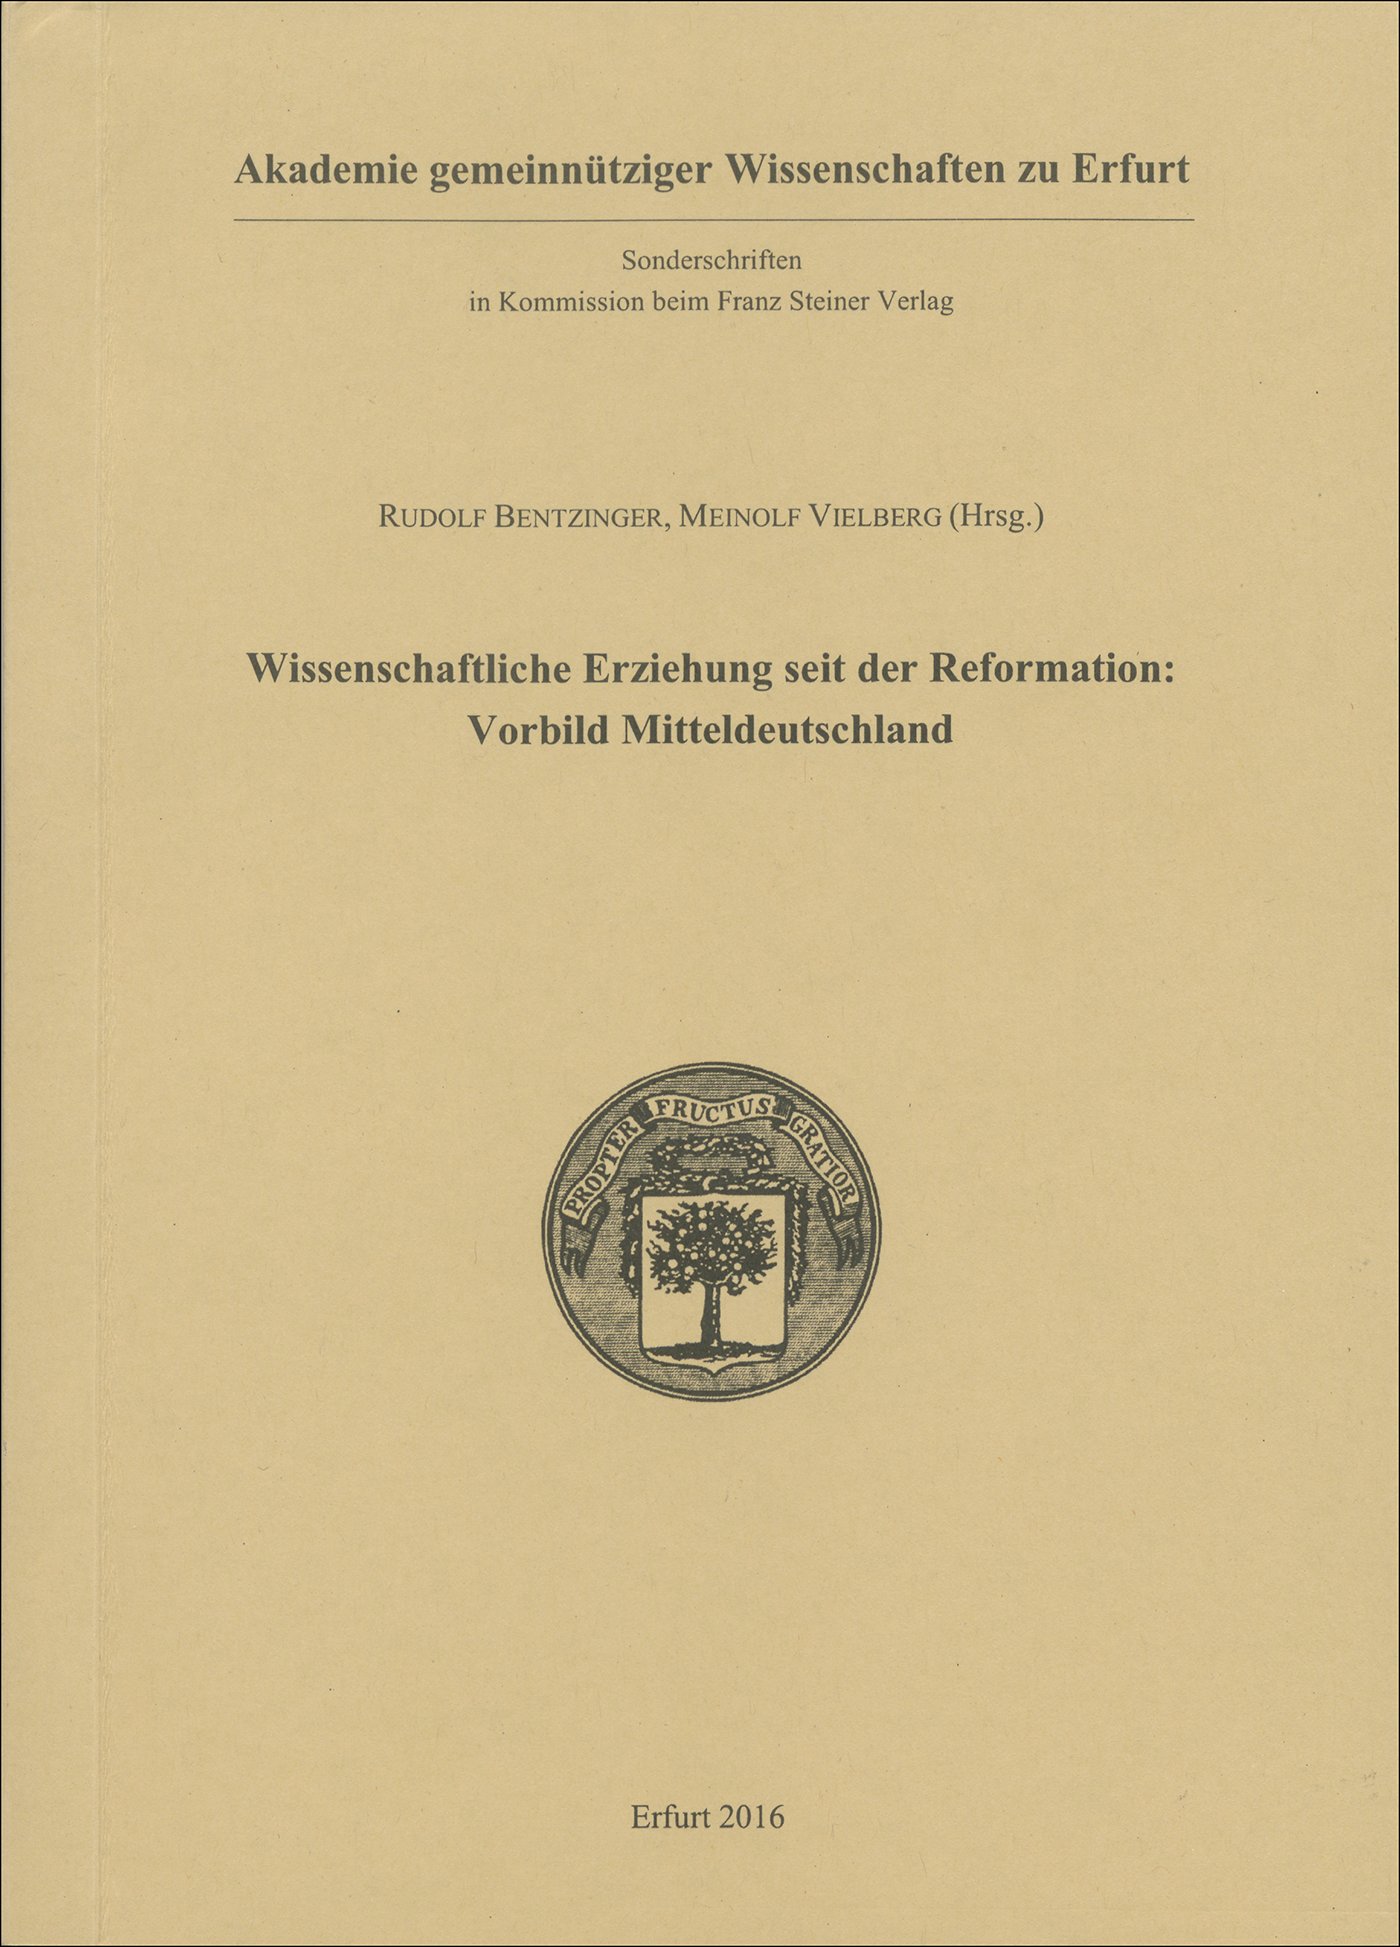 Wissenschaftliche Erziehung seit der Reformation: Vorbild Mitteldeutschland